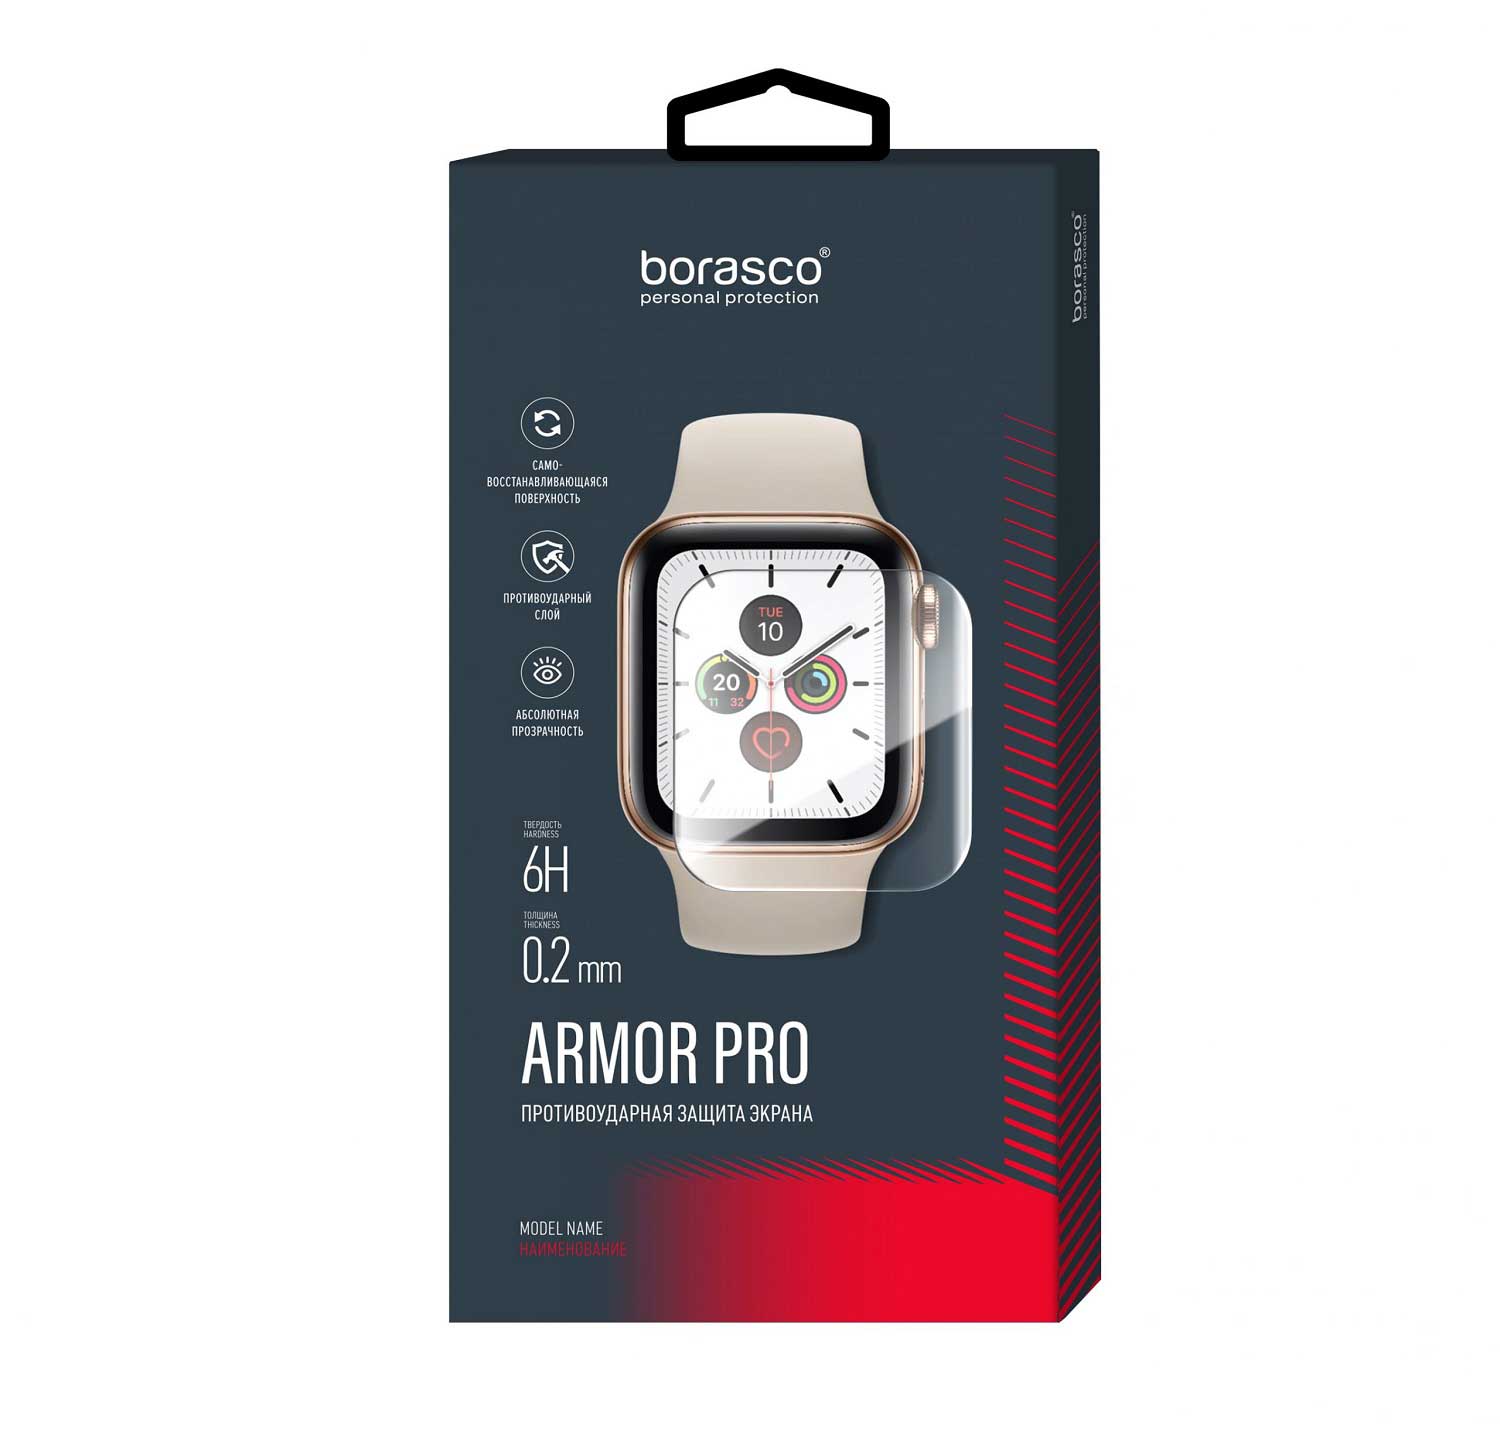 Защита экрана BoraSCO Armor Pro для Xiaomi Mi Band 2 матовый защита экрана borasco armor pro для honor band 3 матовый